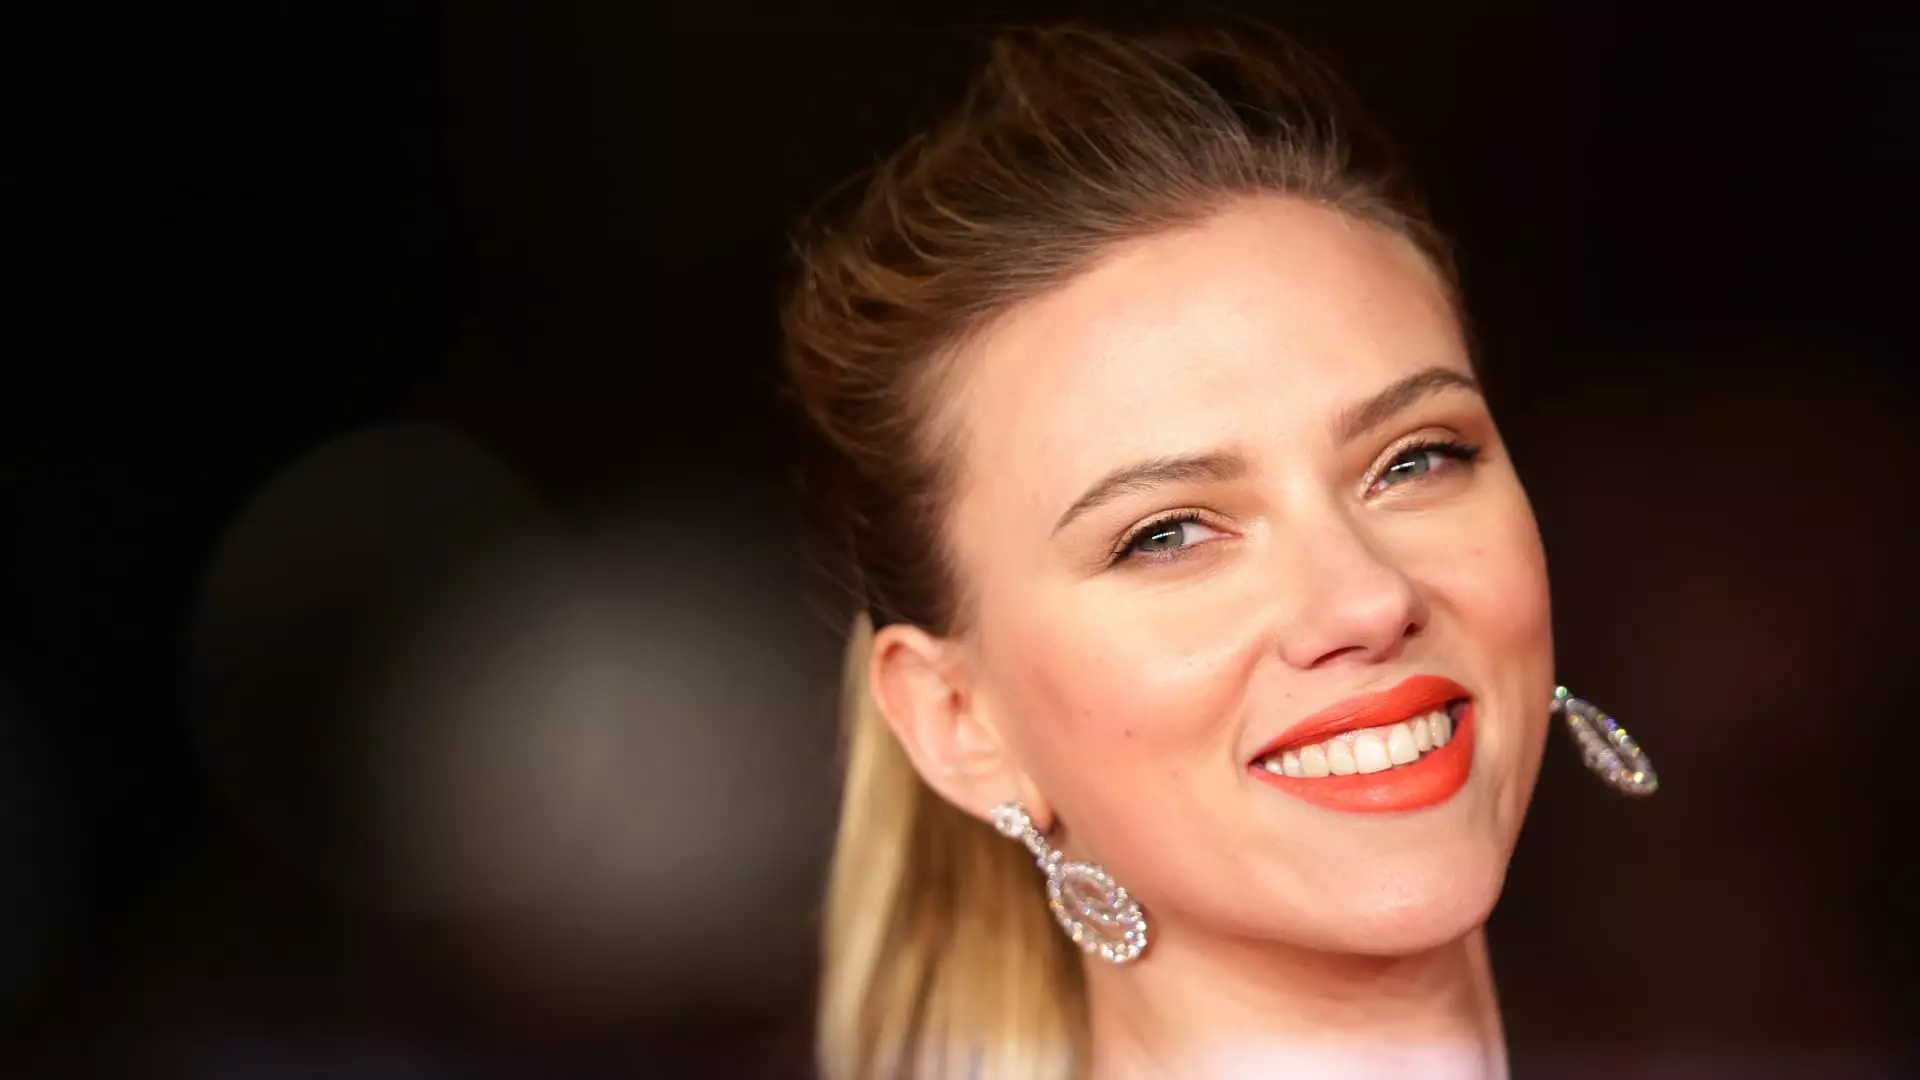 Critique of Scarlett Johansson’s Dispute with OpenAI CEO Sam Altman